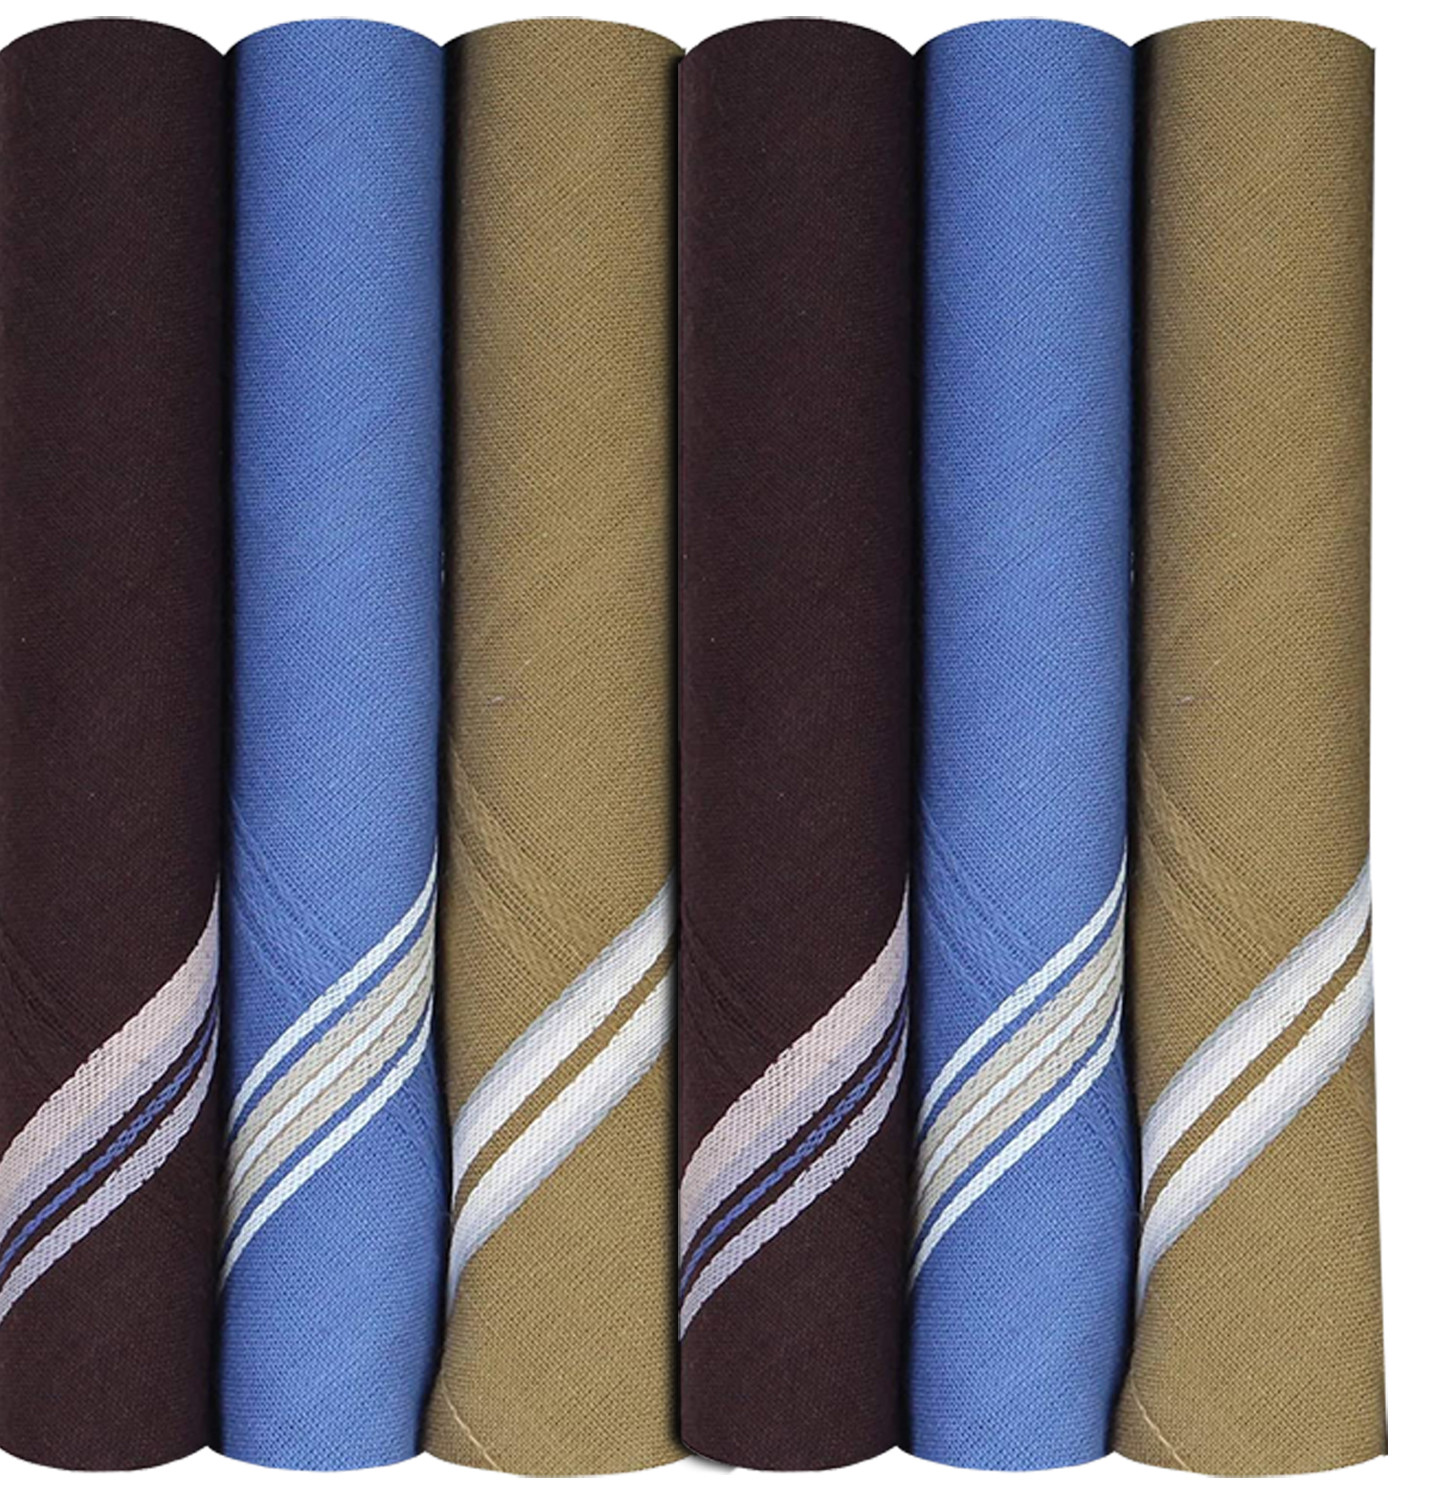 Kuber Industries 100% Cotton Premium Collection HAndkerchiefs Hanky For Men,(Dark color)